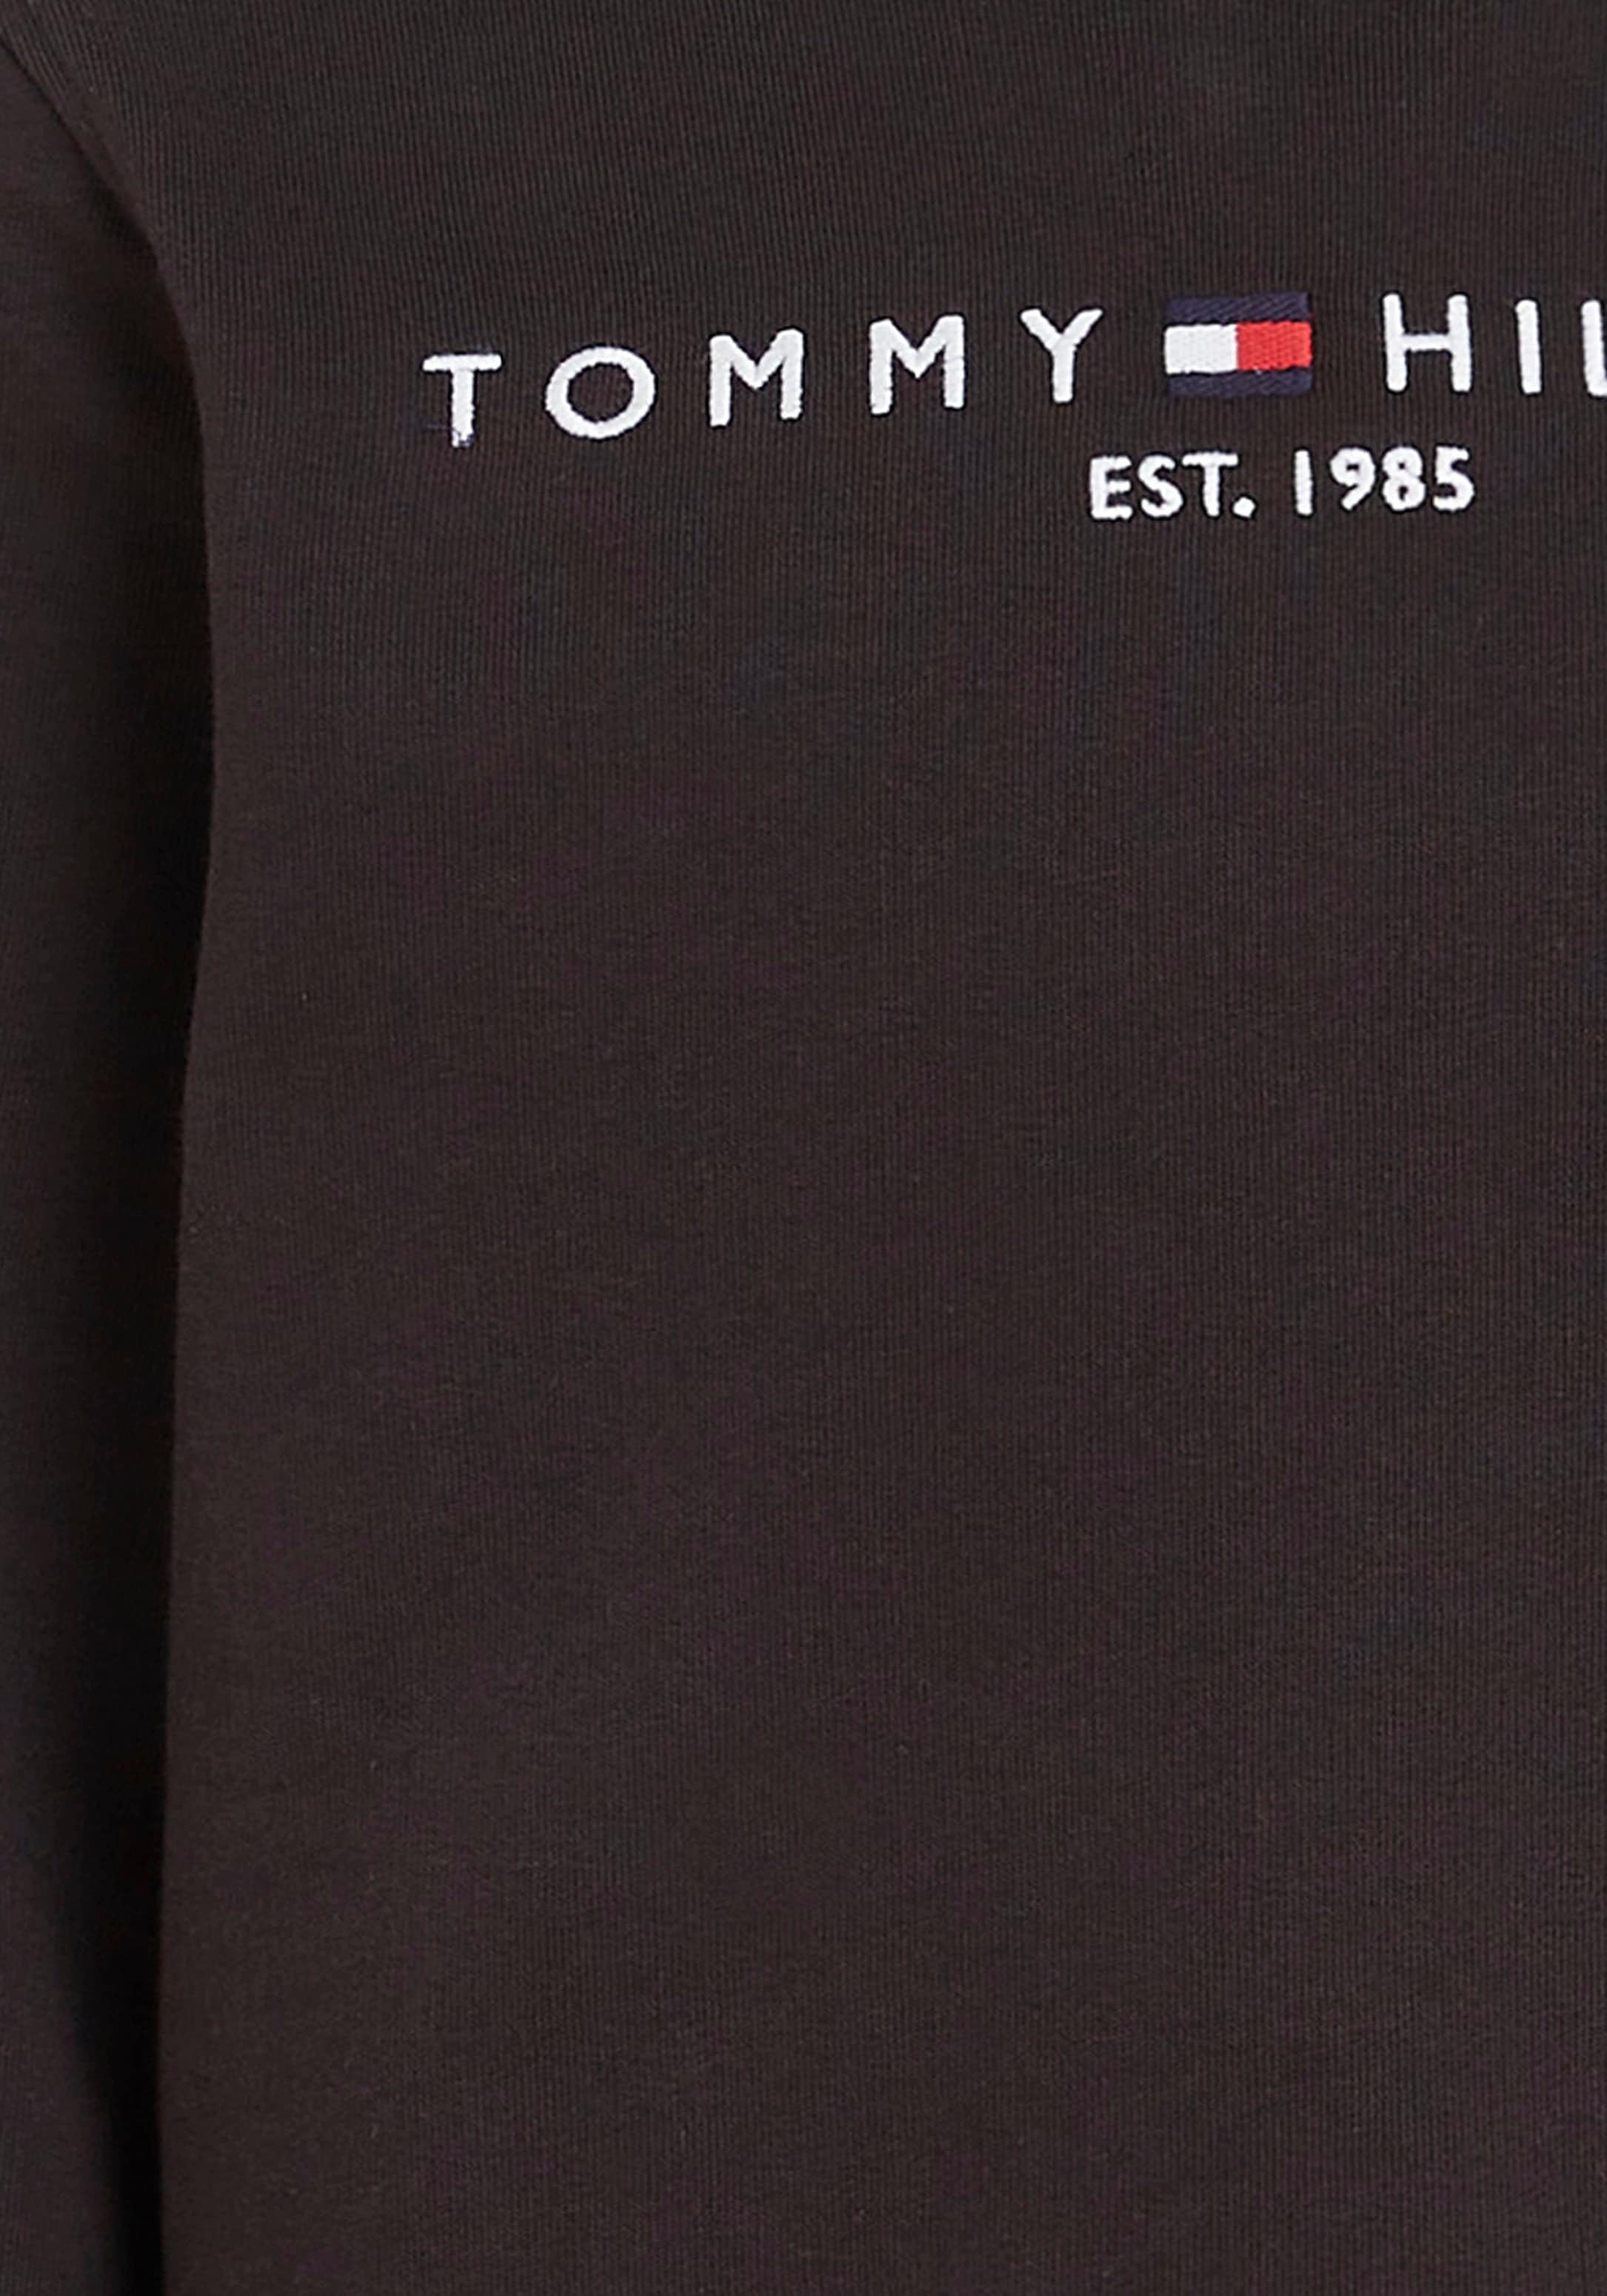 Modische Tommy Hilfiger Sweatshirt »ESSENTIAL SWEATSHIRT«, Kinder Kids  Junior MiniMe,für Jungen und Mädchen versandkostenfrei kaufen